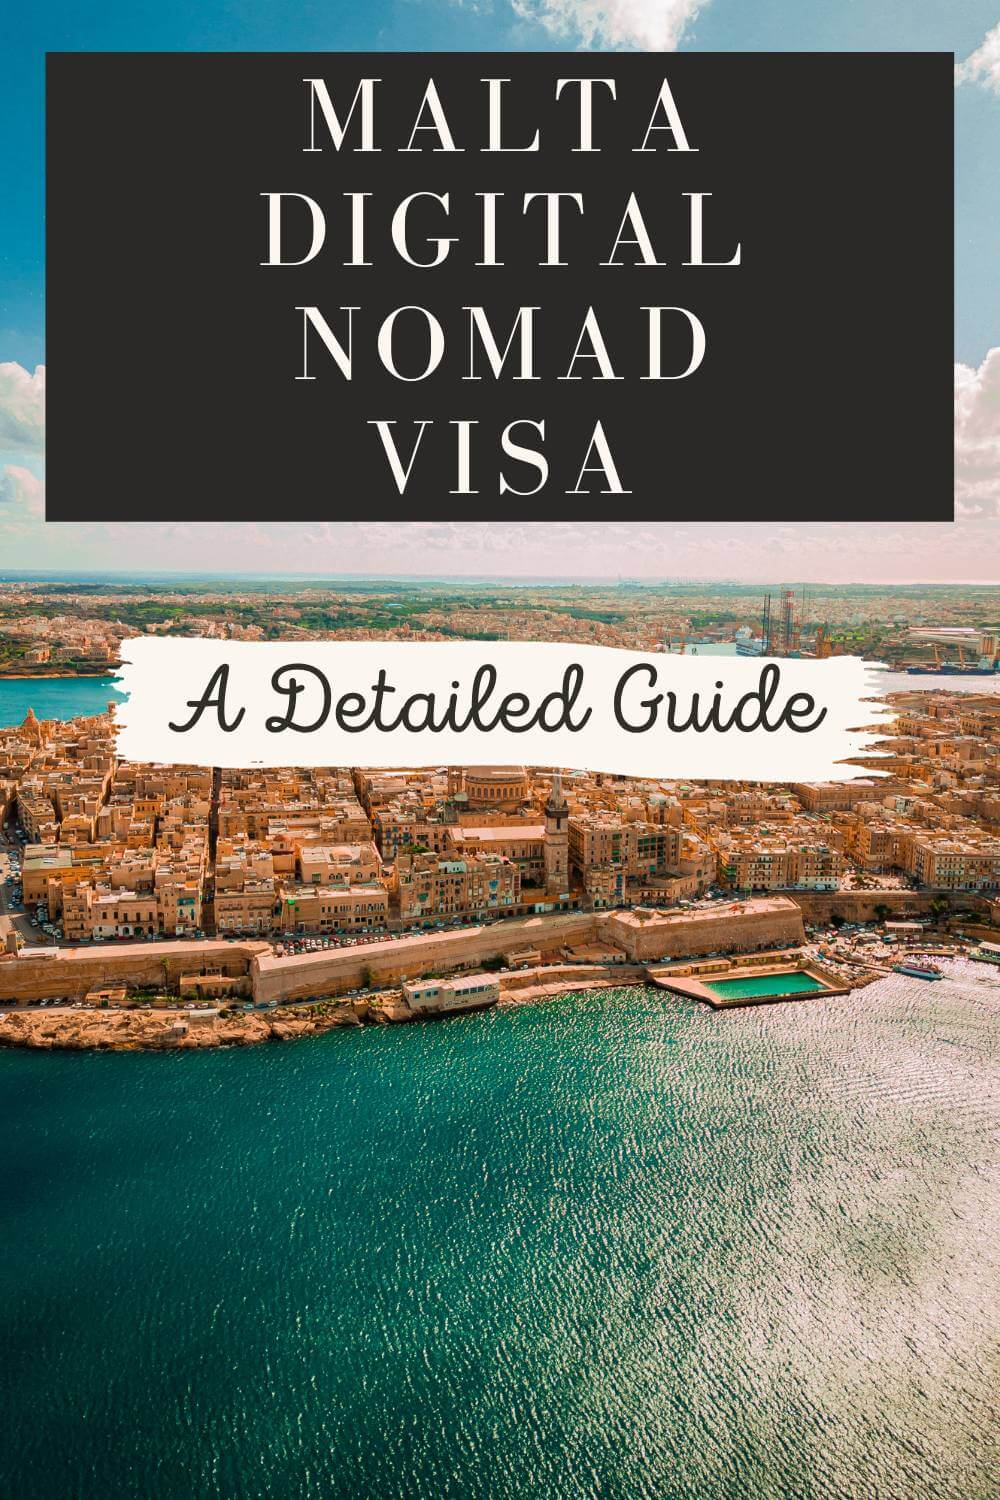 Malta Digital Nomad Visa: A Detailed Guide